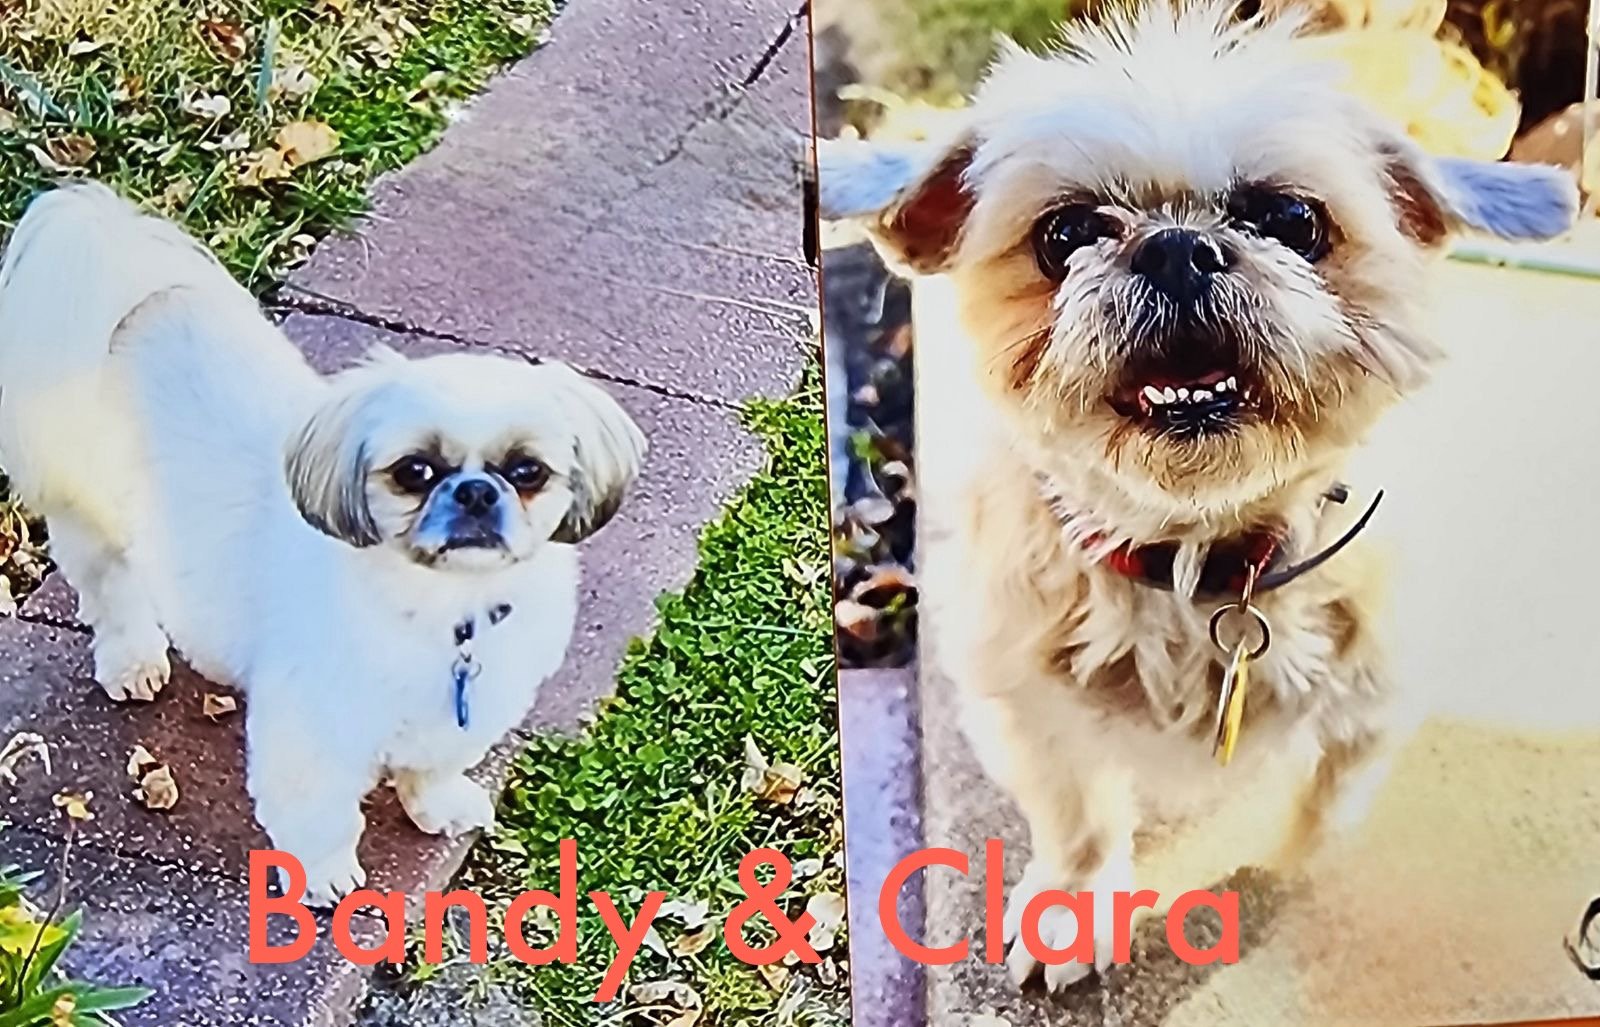 Clara and Bandy